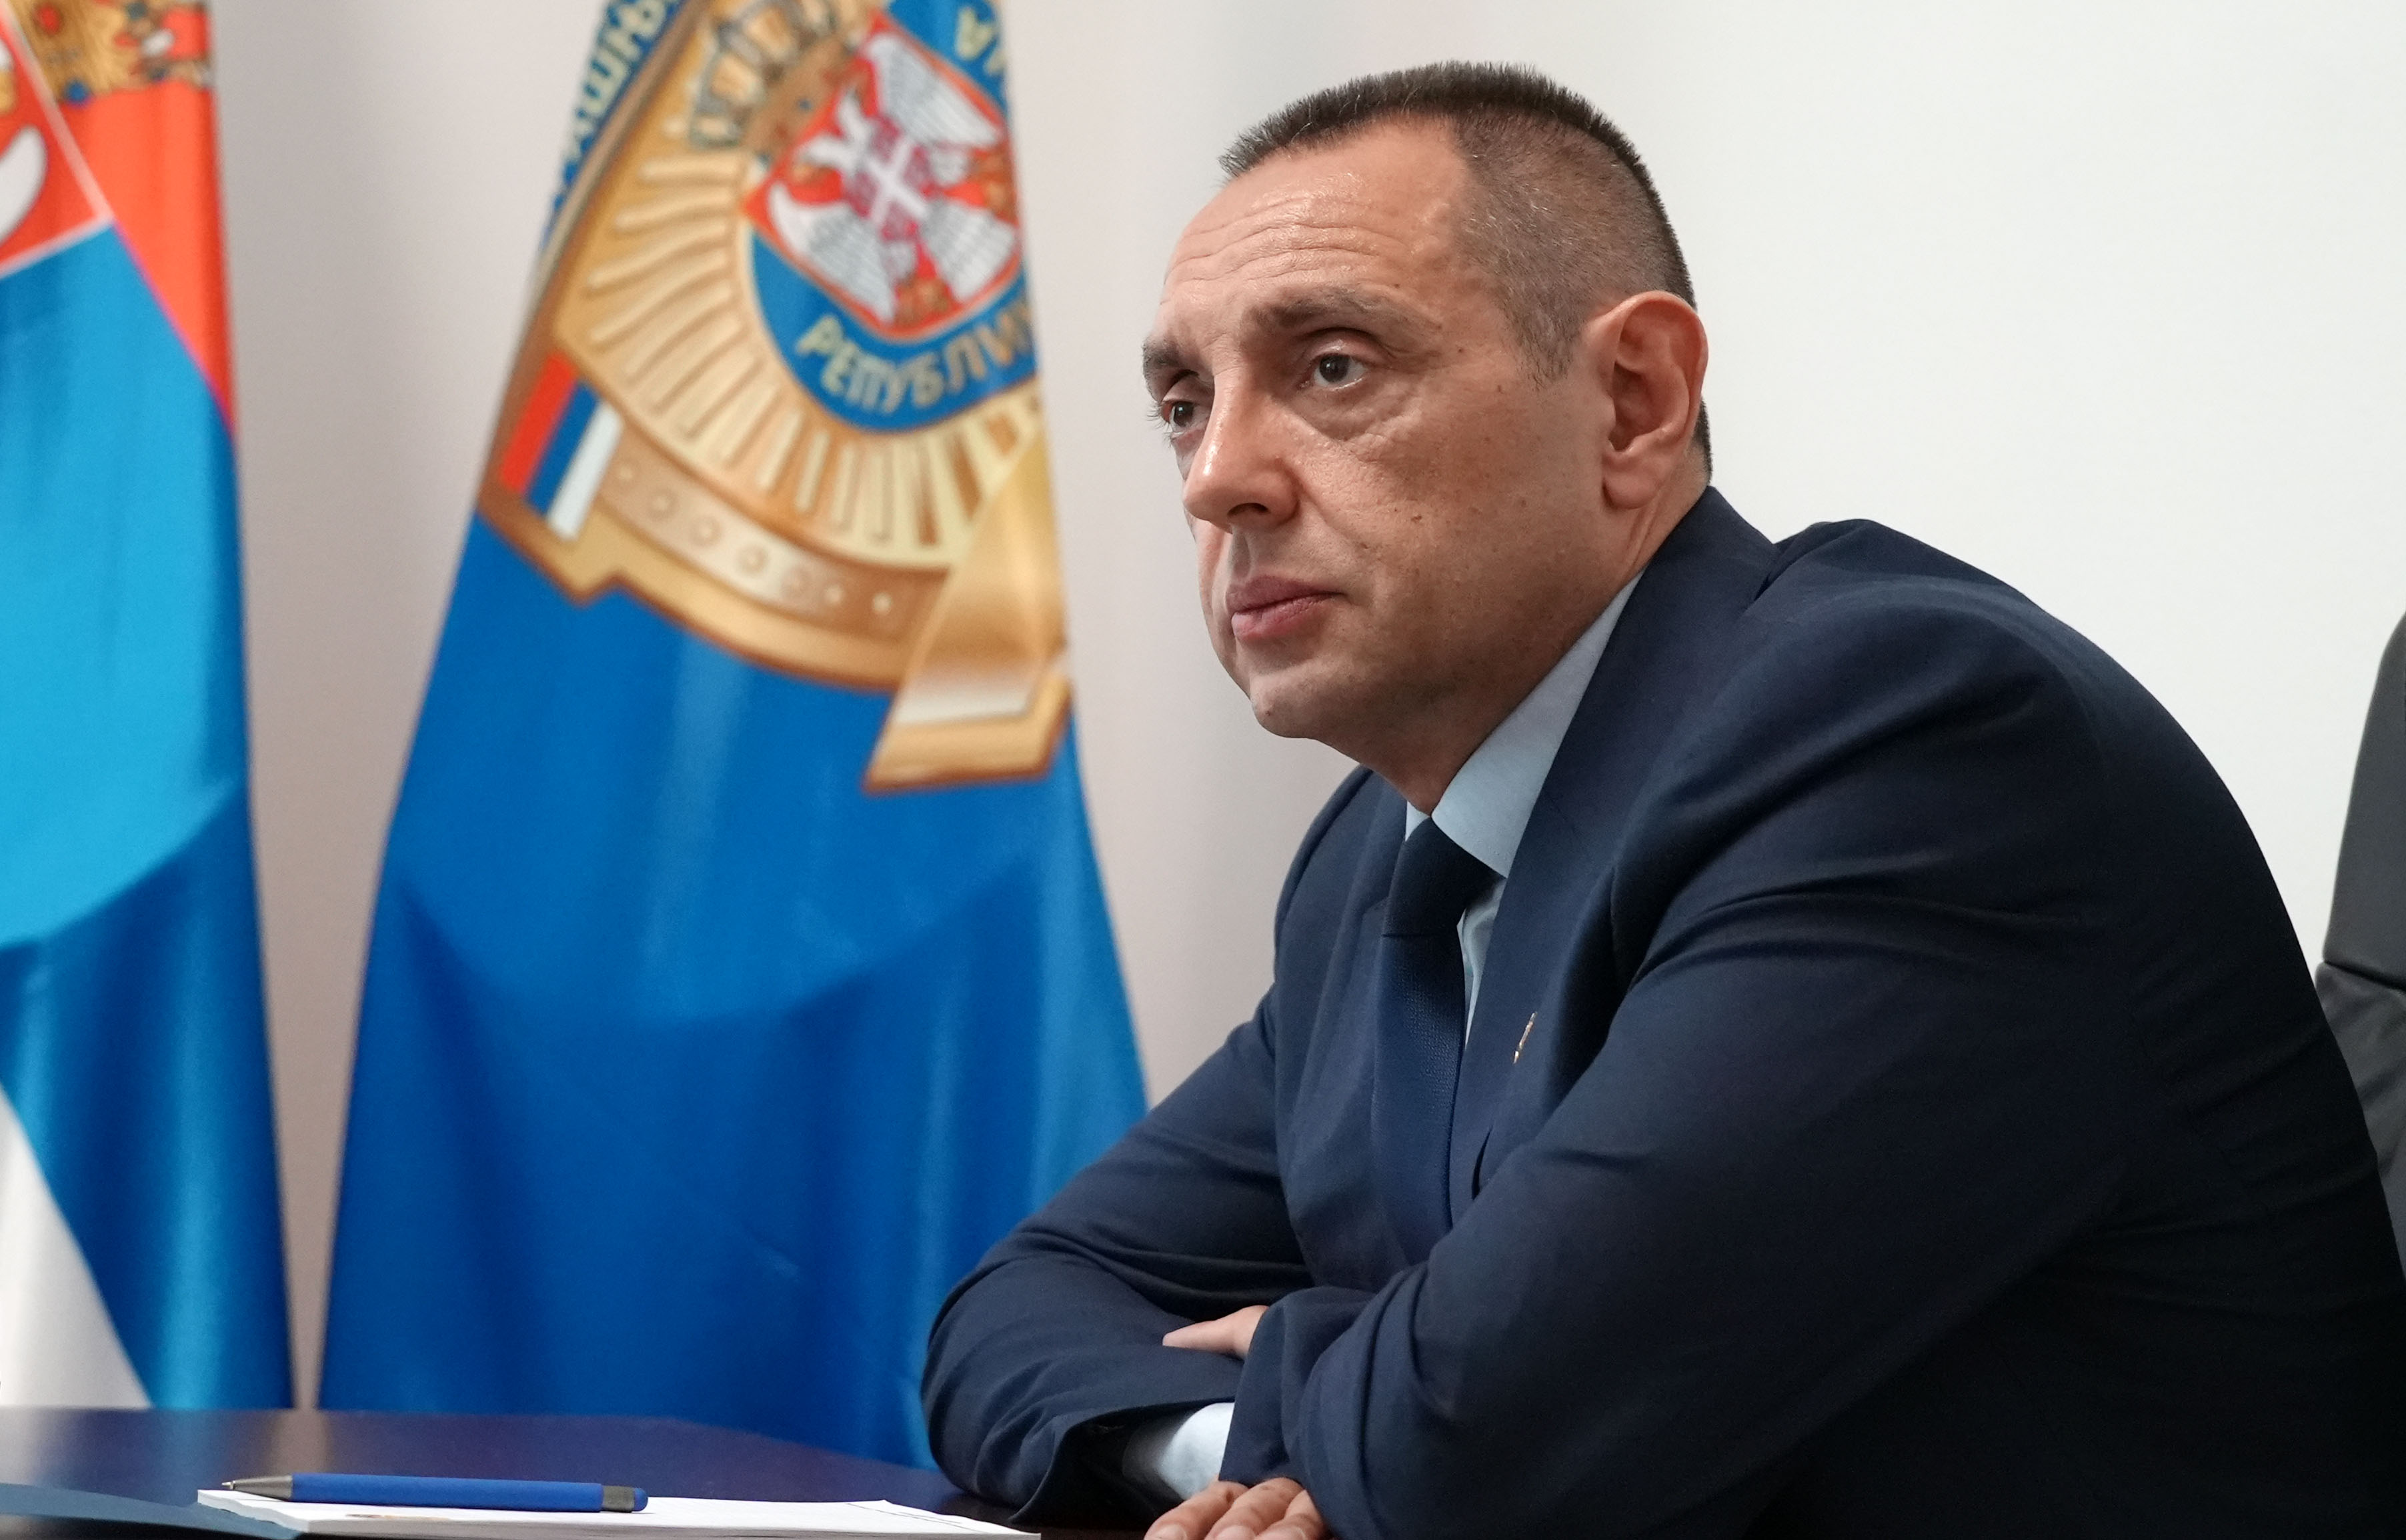 Министар унутрашњих послова Србије Александар Вулин: Нећемо толерисати насиље на улицама Београда, нити ће бити недозвољене шетње